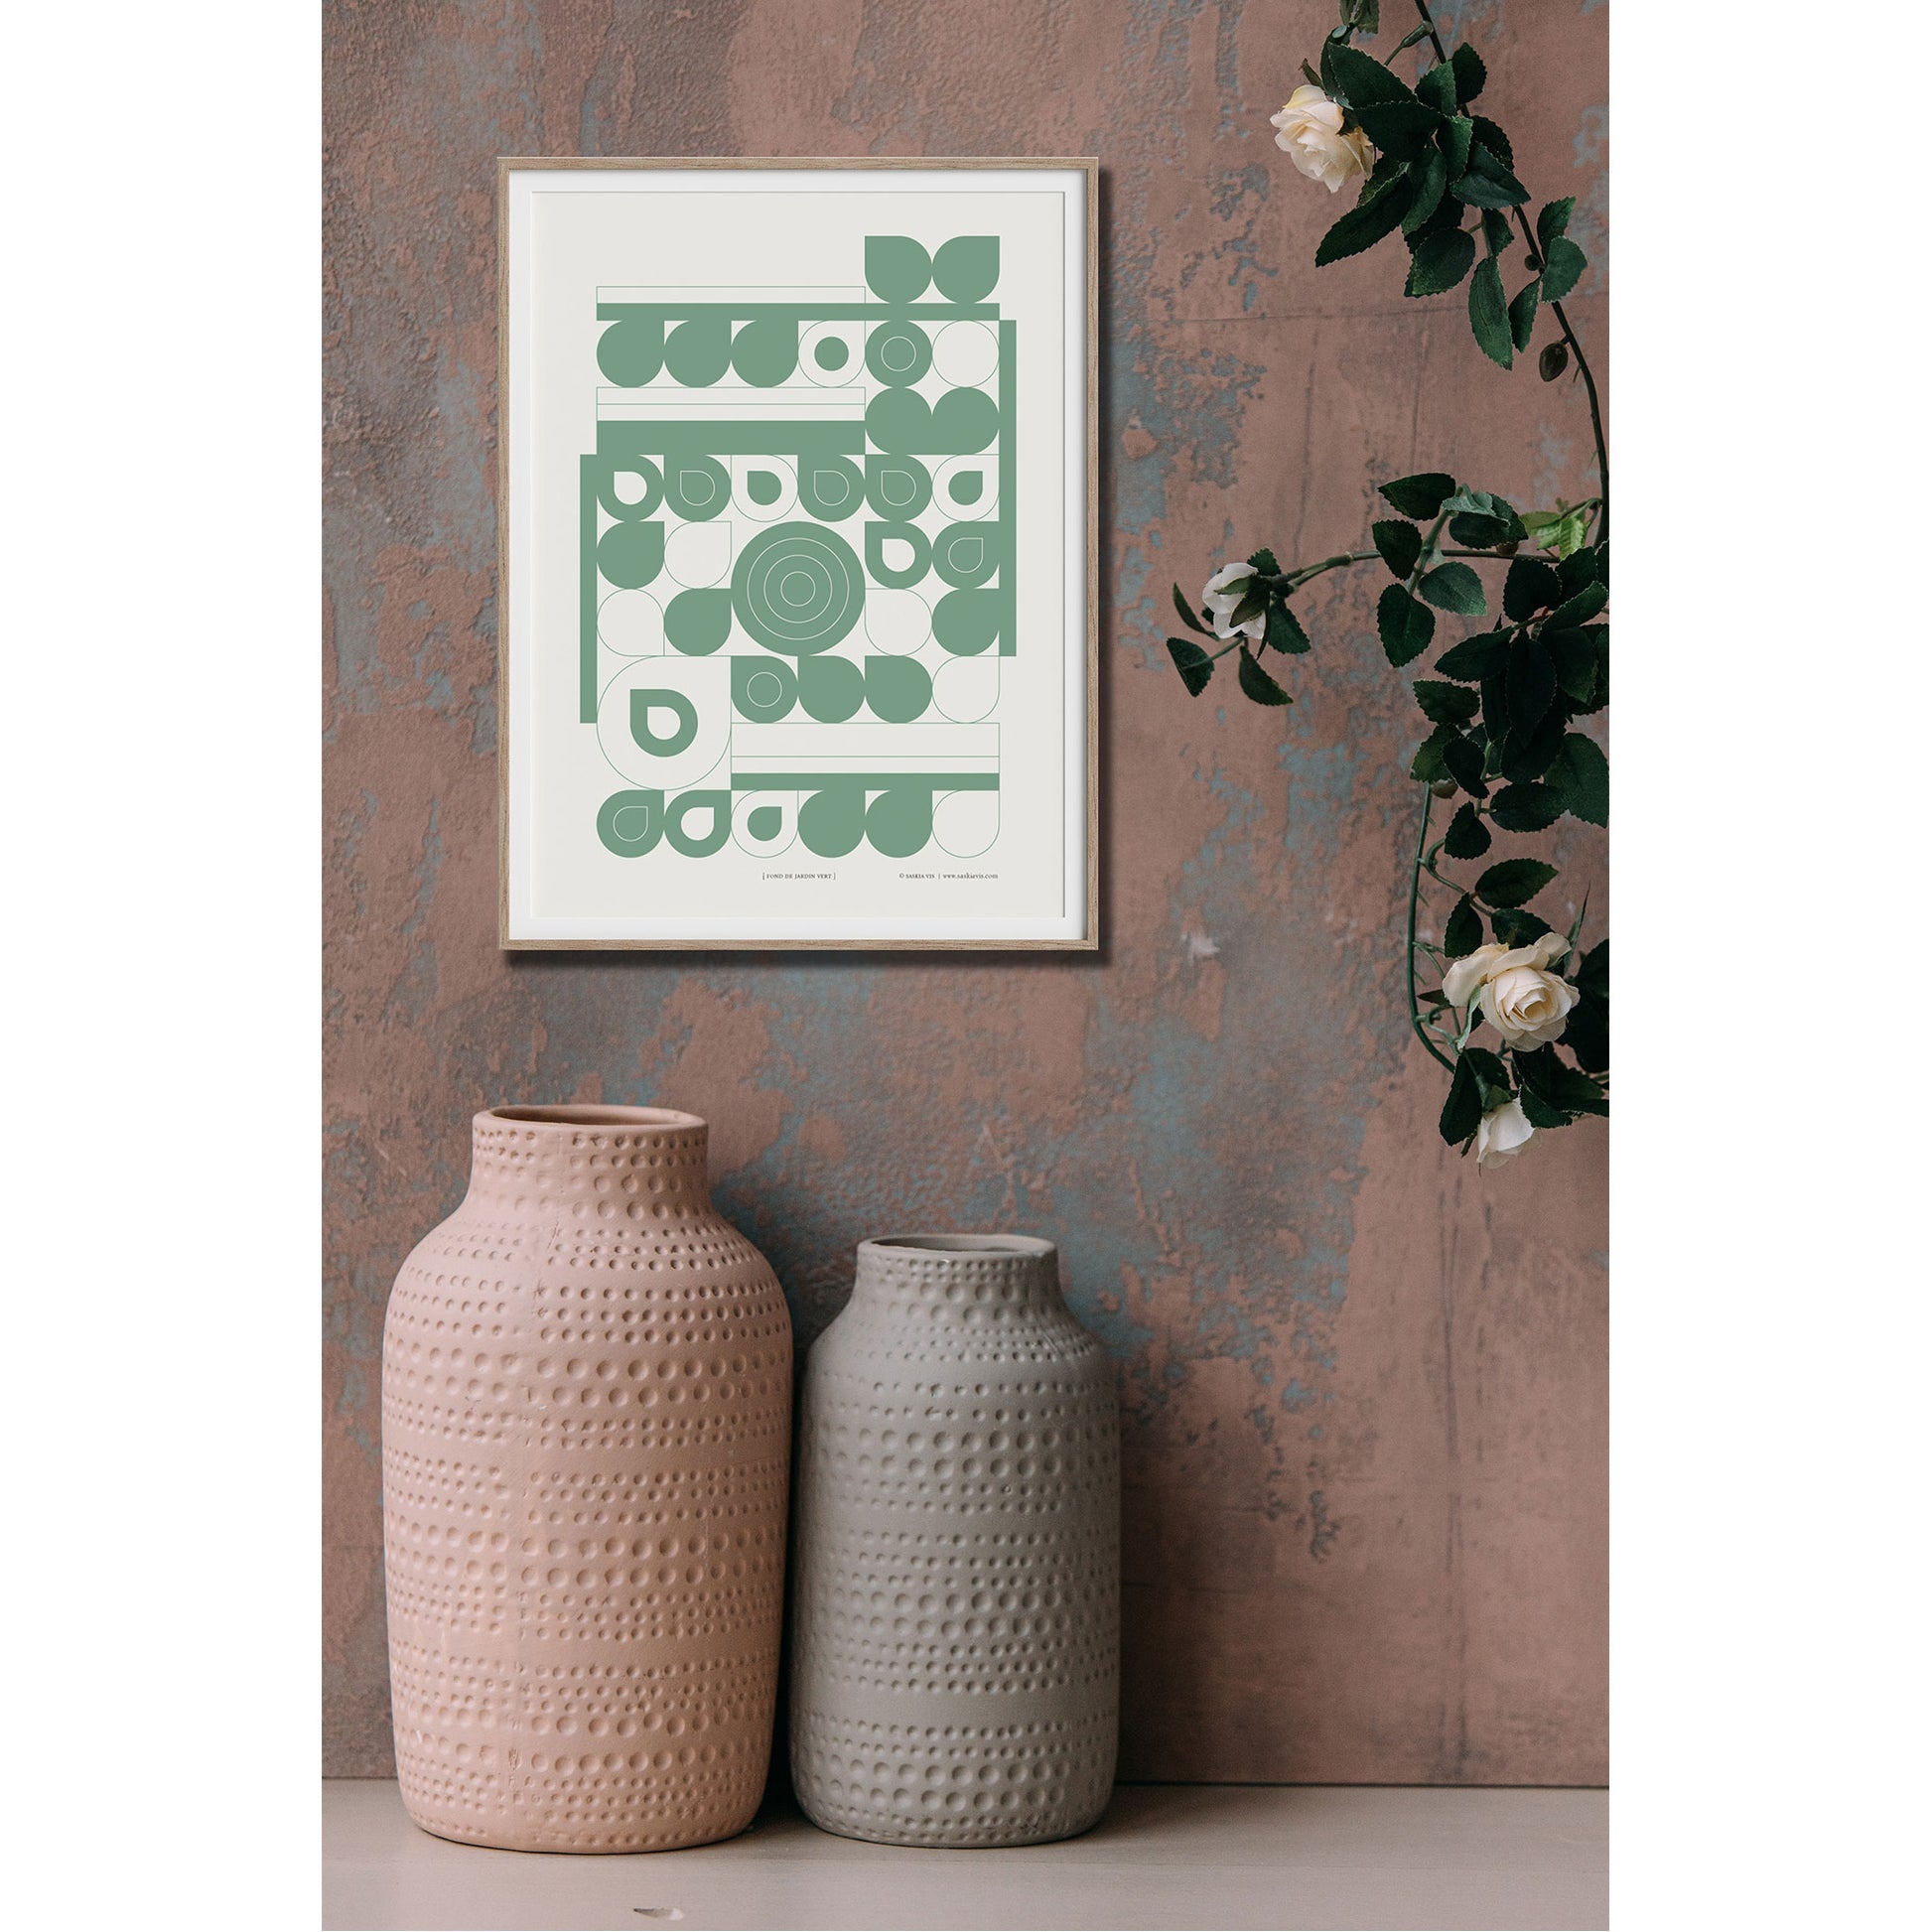 Productafbeelding poster "fond de jardin vert" 1ste impressie foto ingelijst, hangend aan een sfeervolle wand met twee handgemaakte vazen erbij.